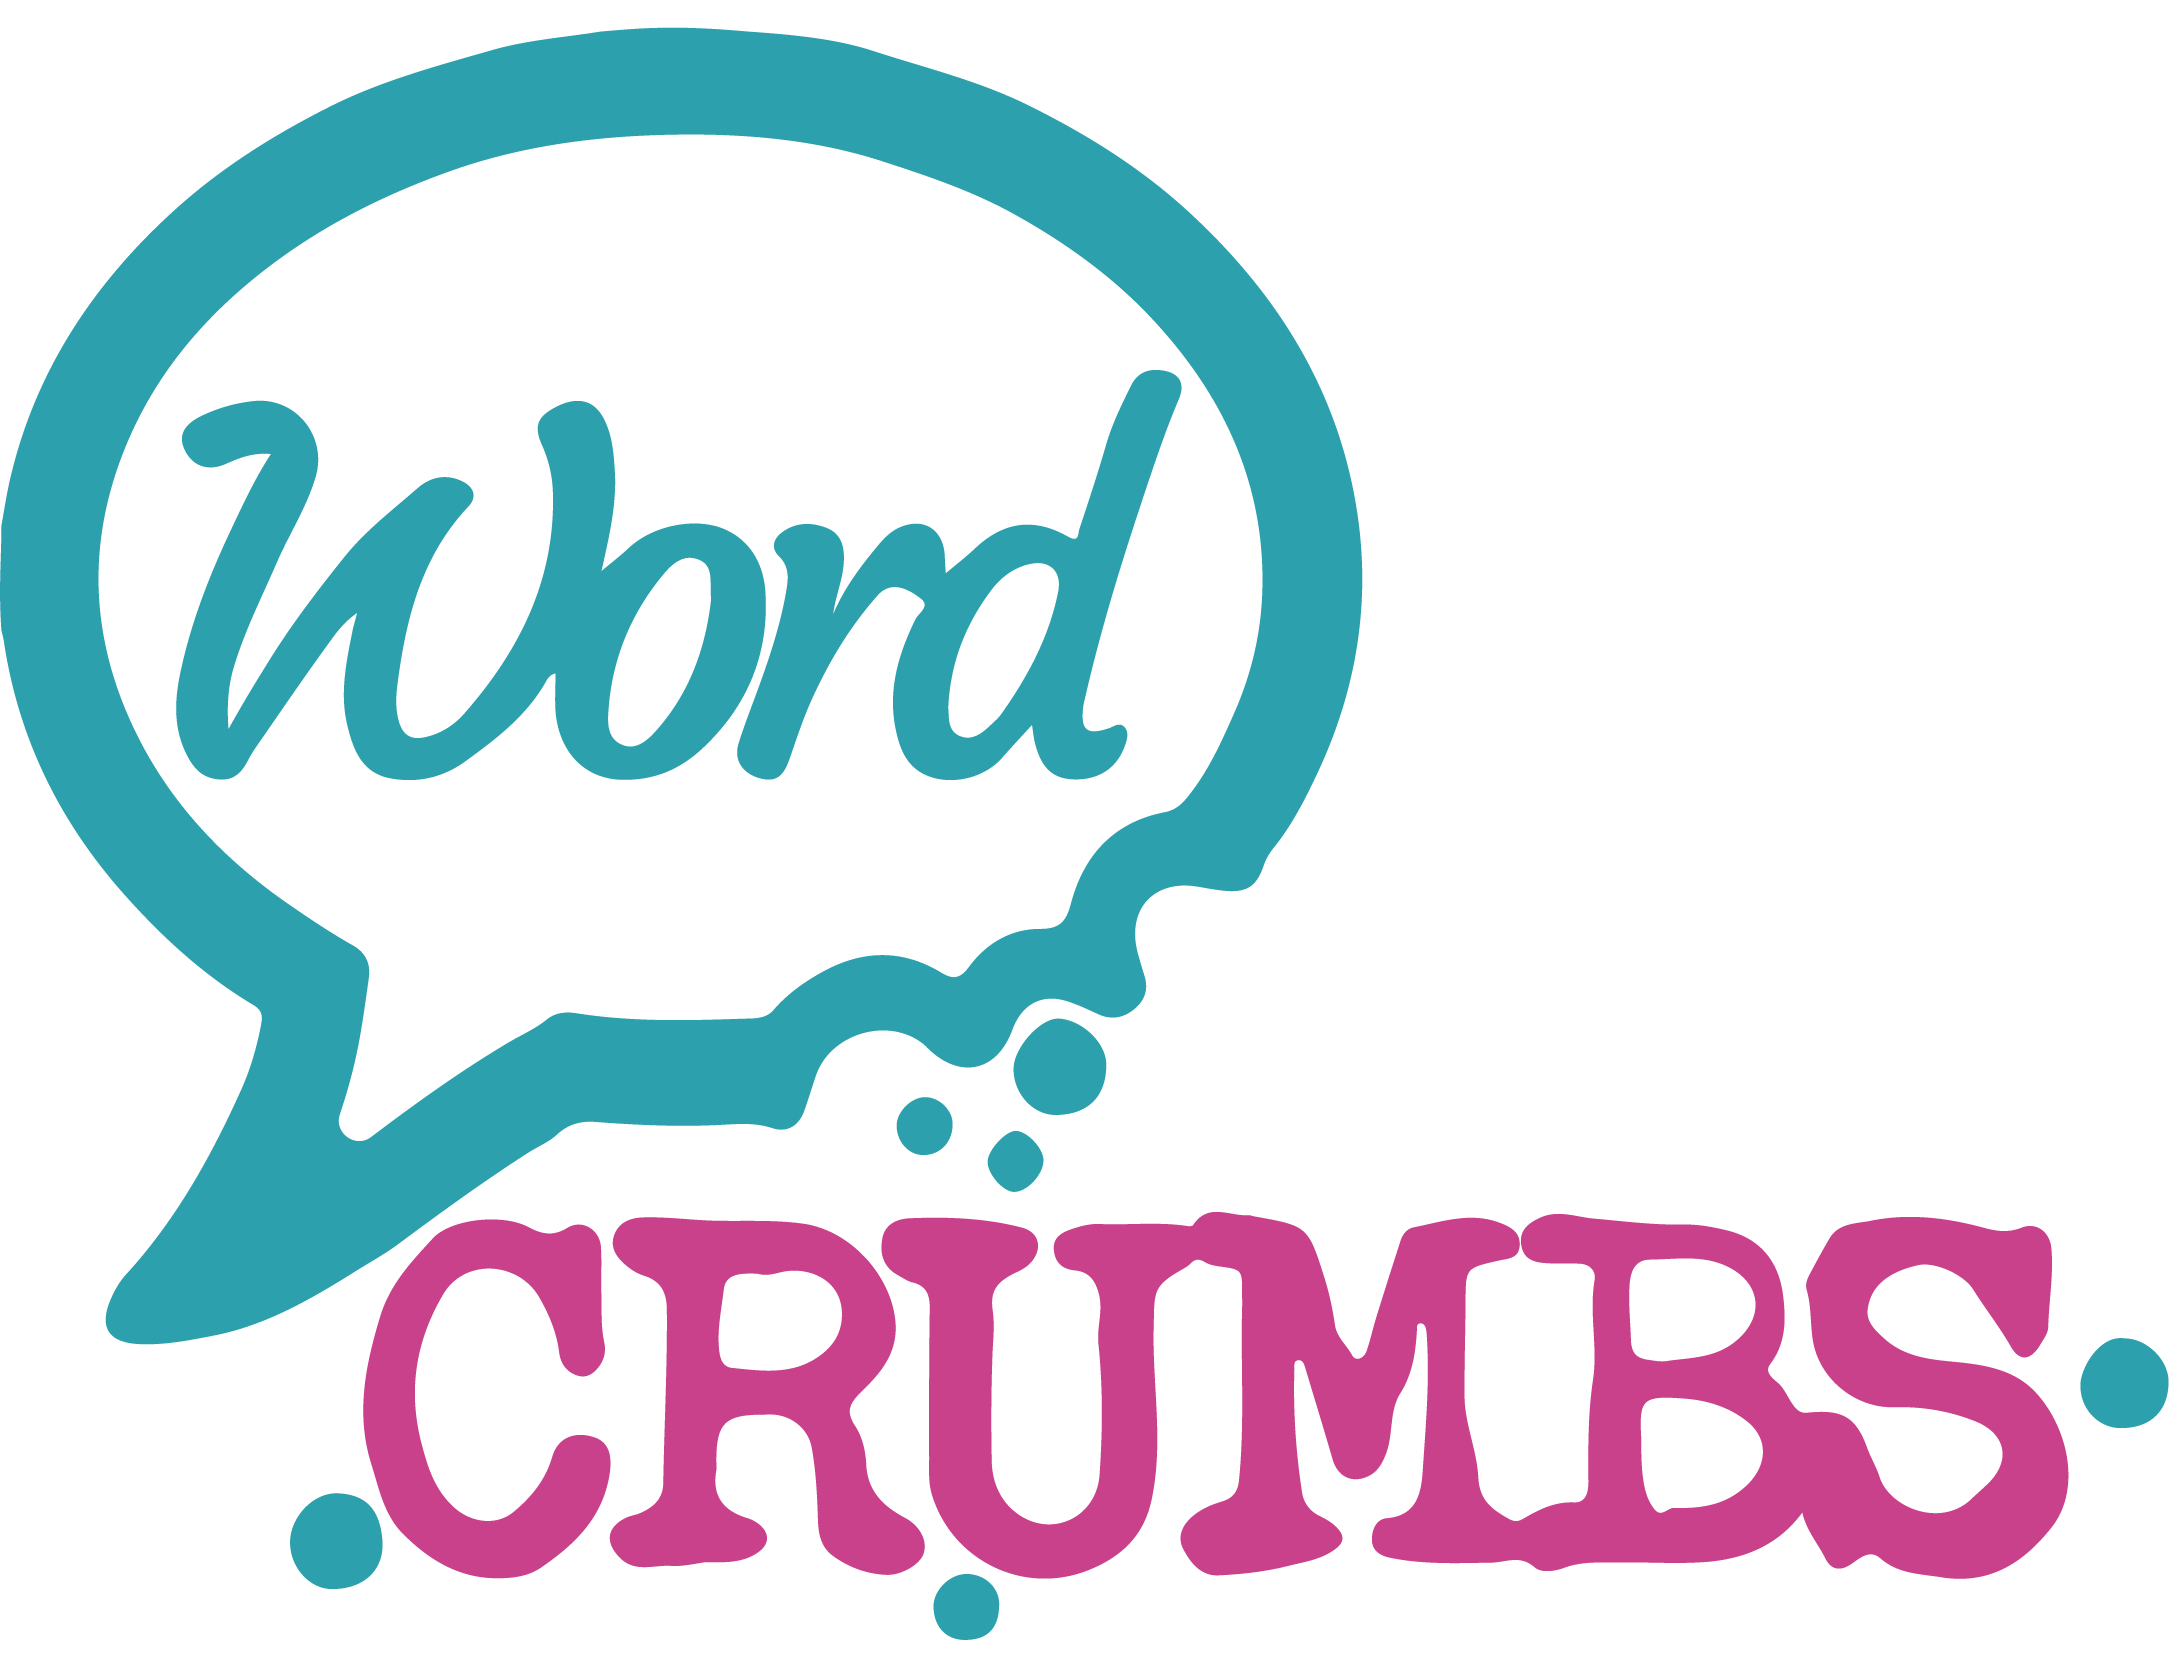 WordCrumbs